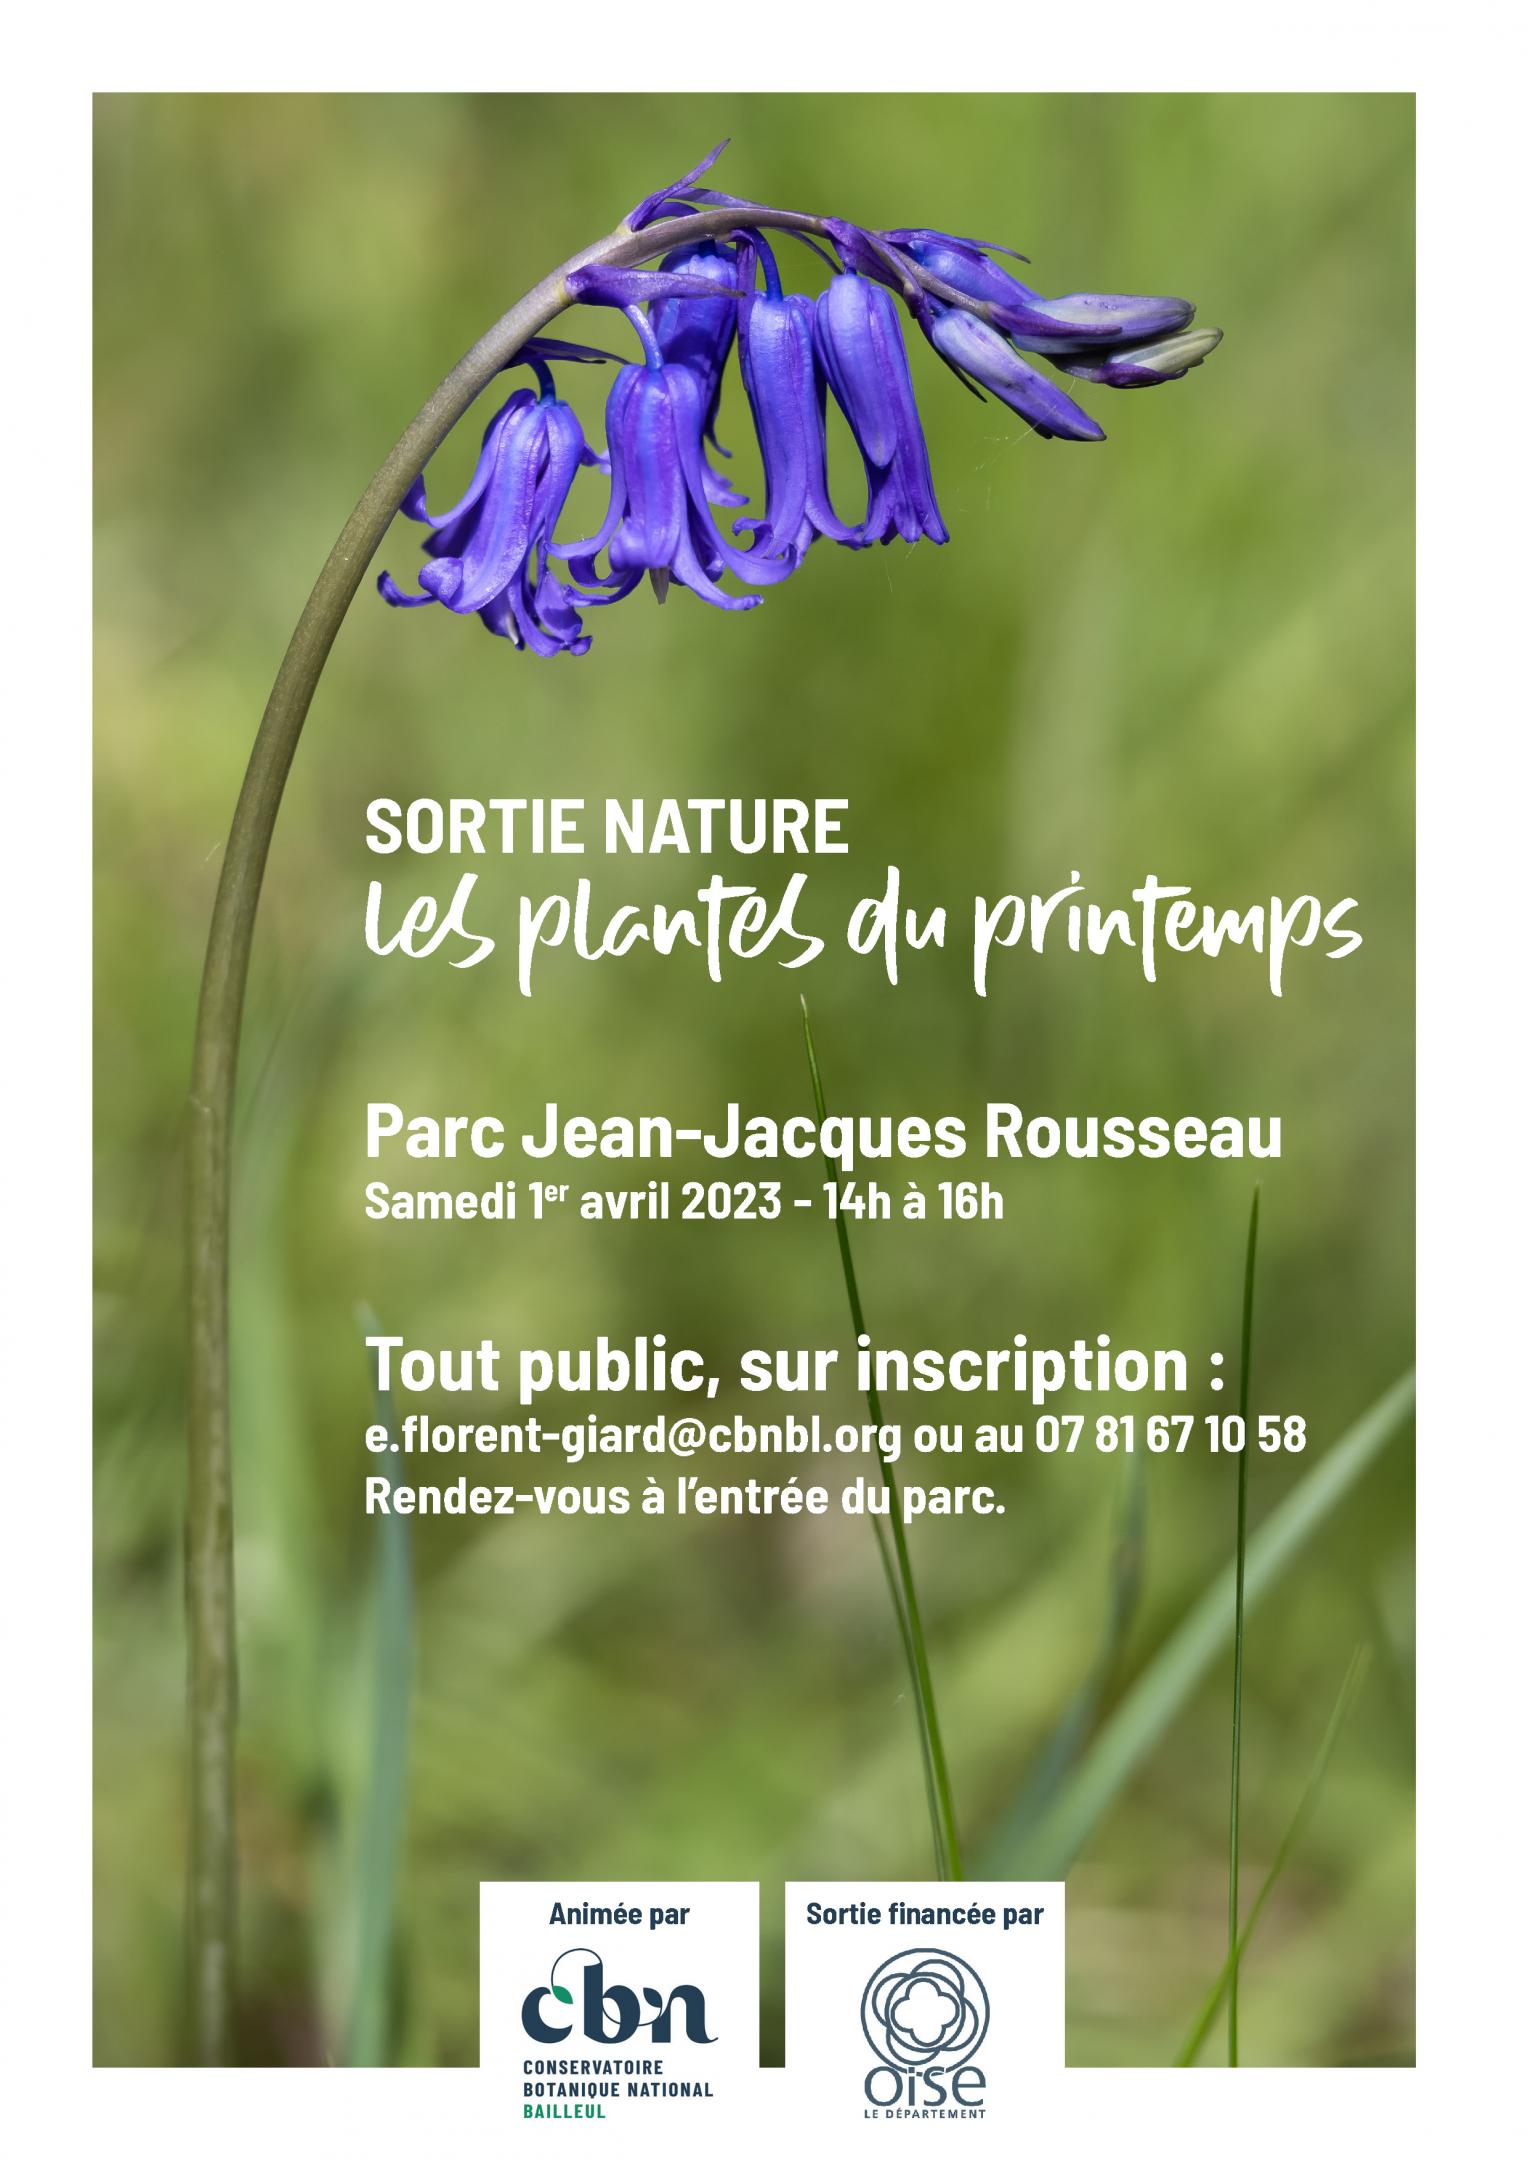 Sortie nature : "Les plantes du printemps" au Parc Jean-Jacques Rousseau d'Ermenonville (Oise)